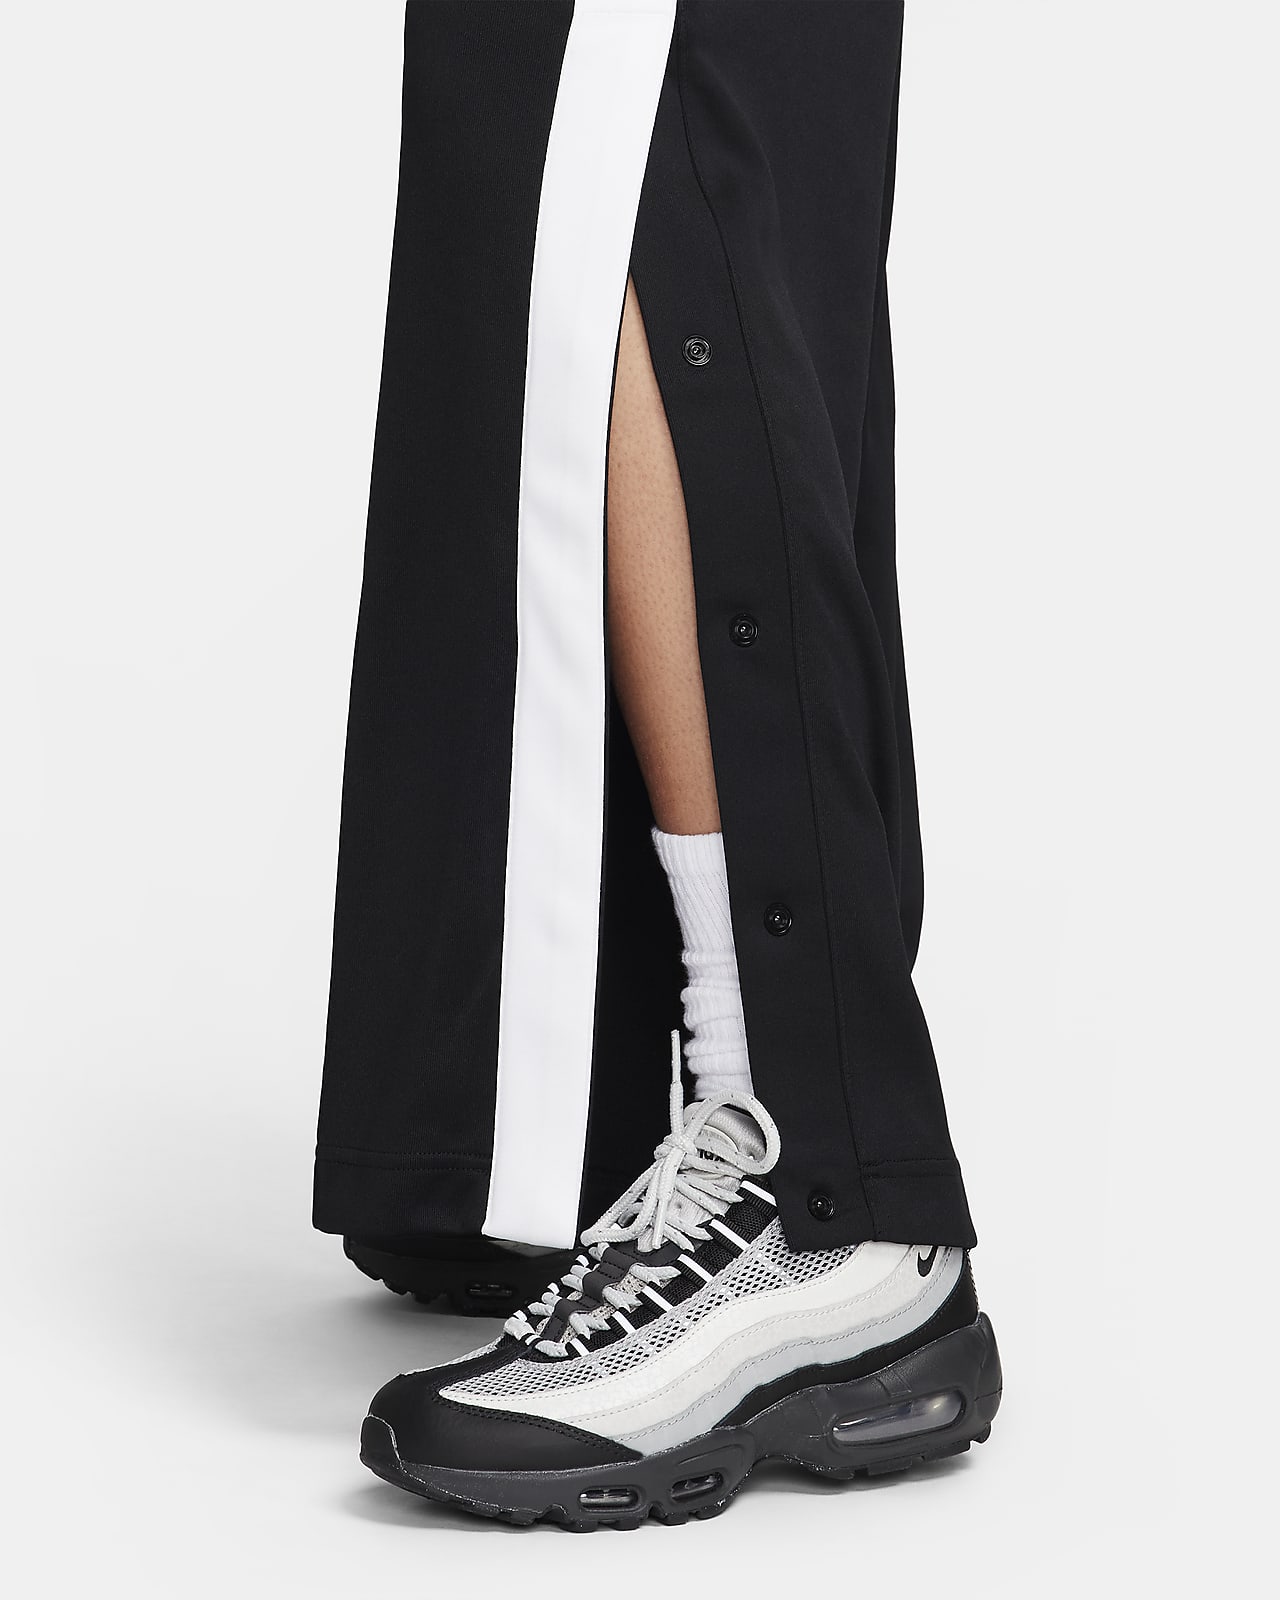 Women's Winter Wear Trousers. Nike CA